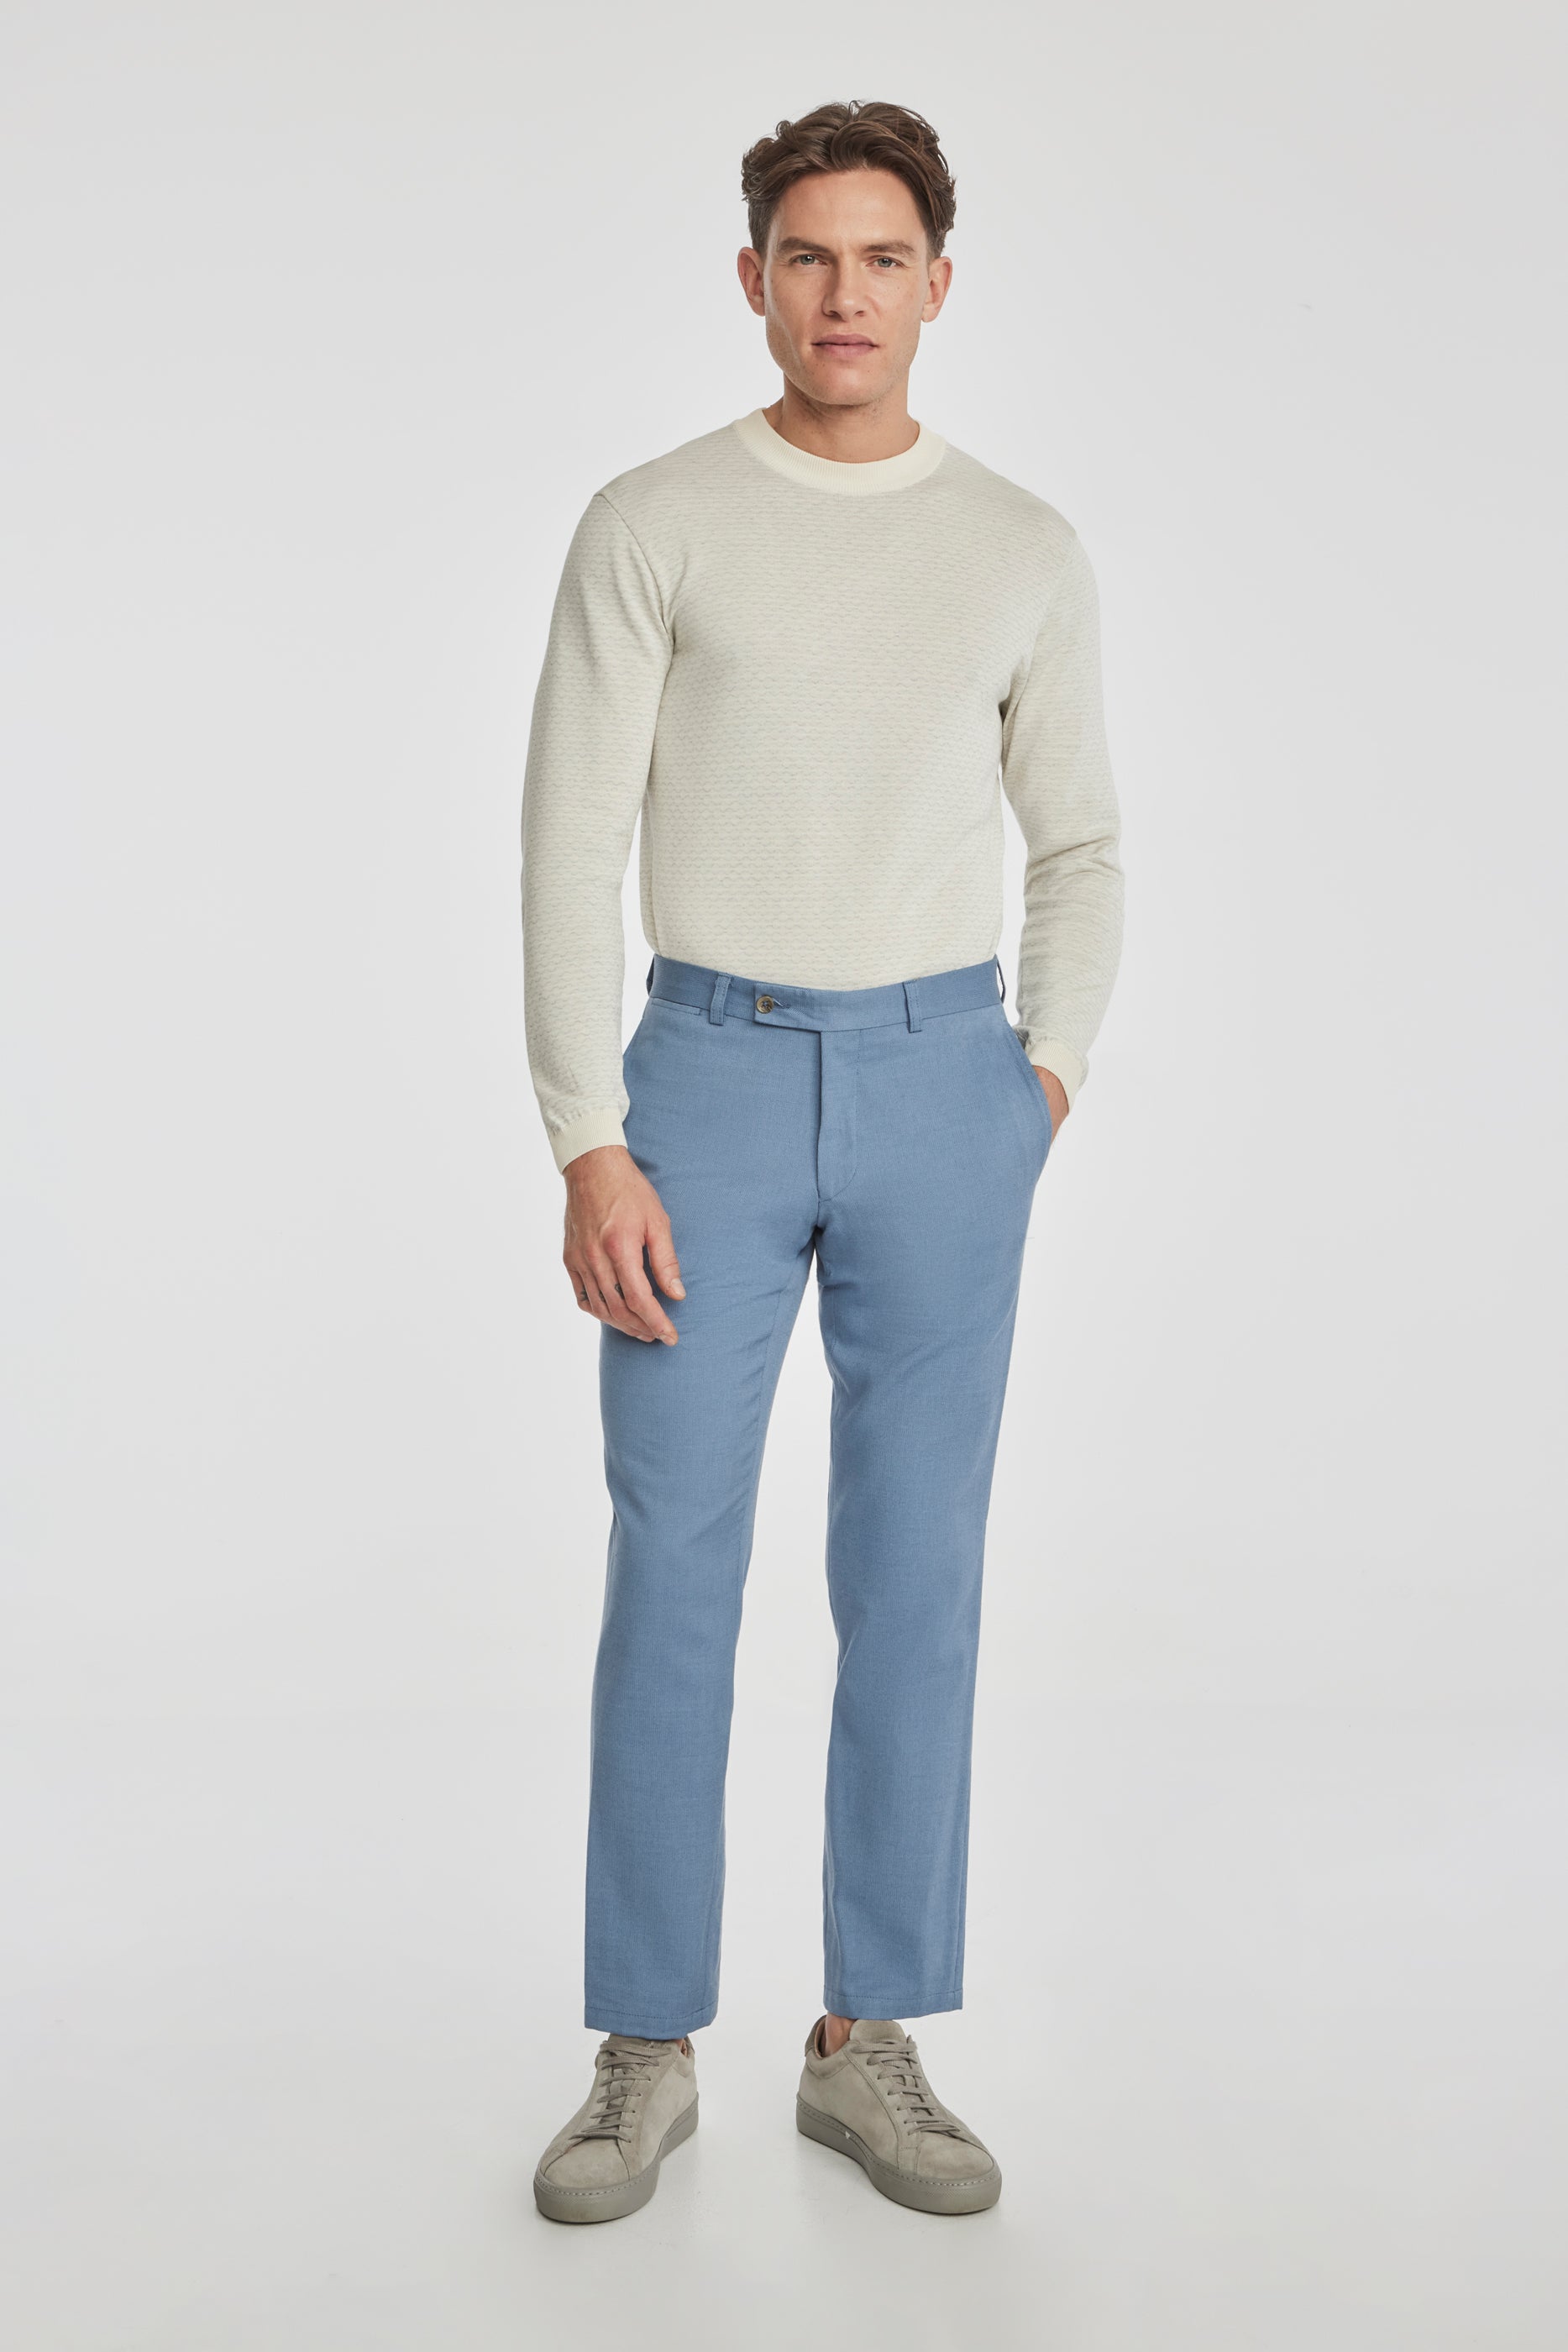 Vue alternative 1 Palmer pantalon en coton texturé et en laine extensible, bleu clair